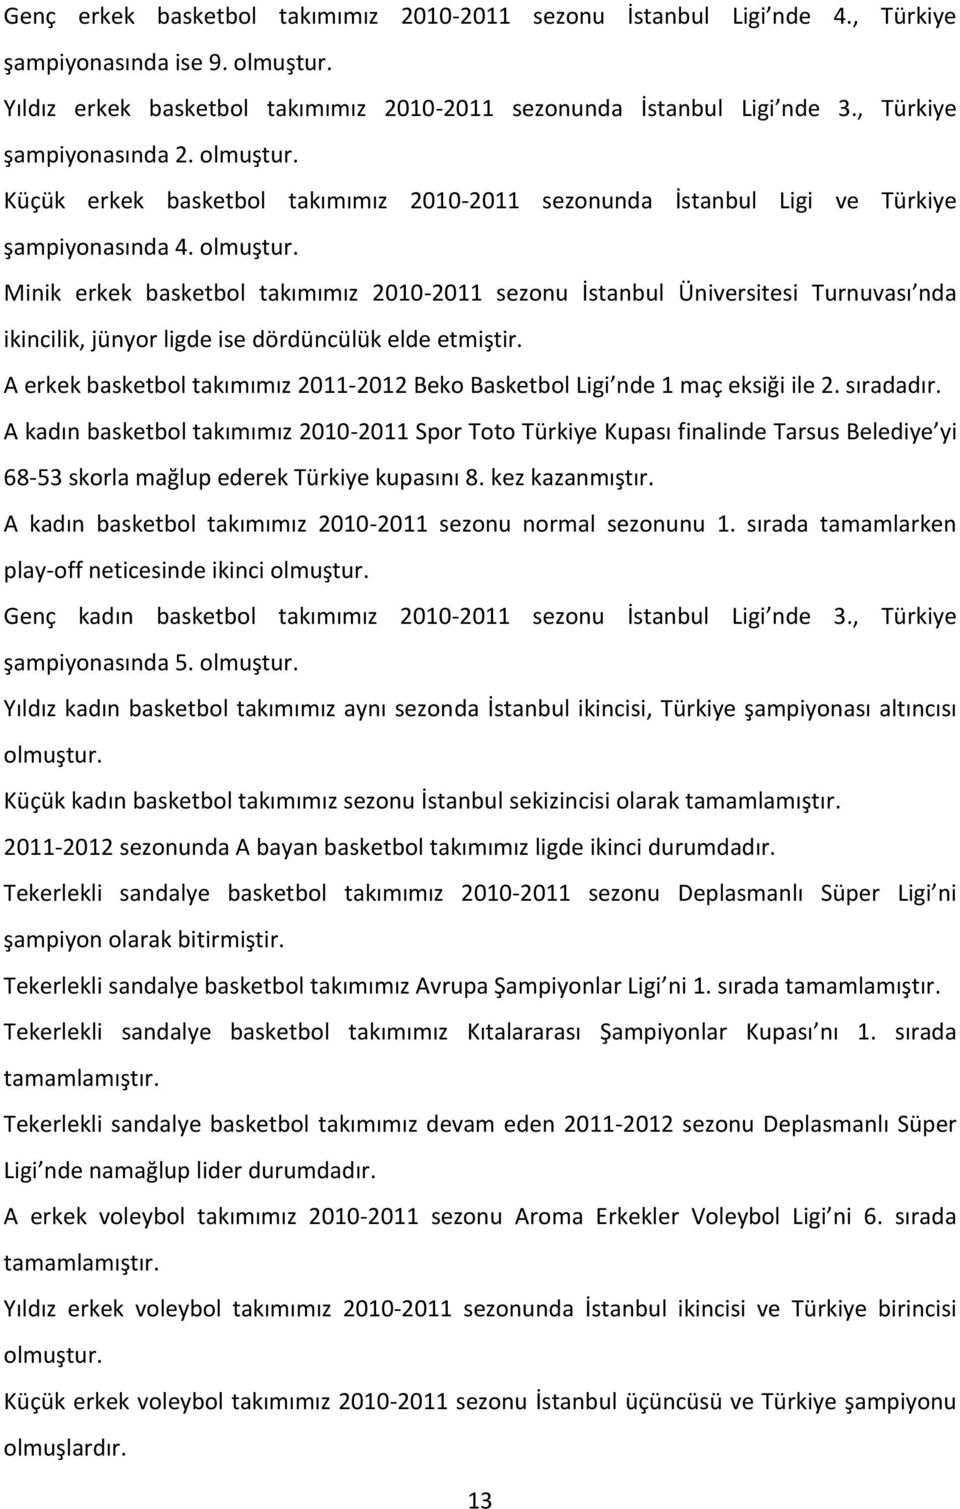 A erkek basketbol takımımız 2011-2012 Beko Basketbol Ligi nde 1 maç eksiği ile 2. sıradadır.